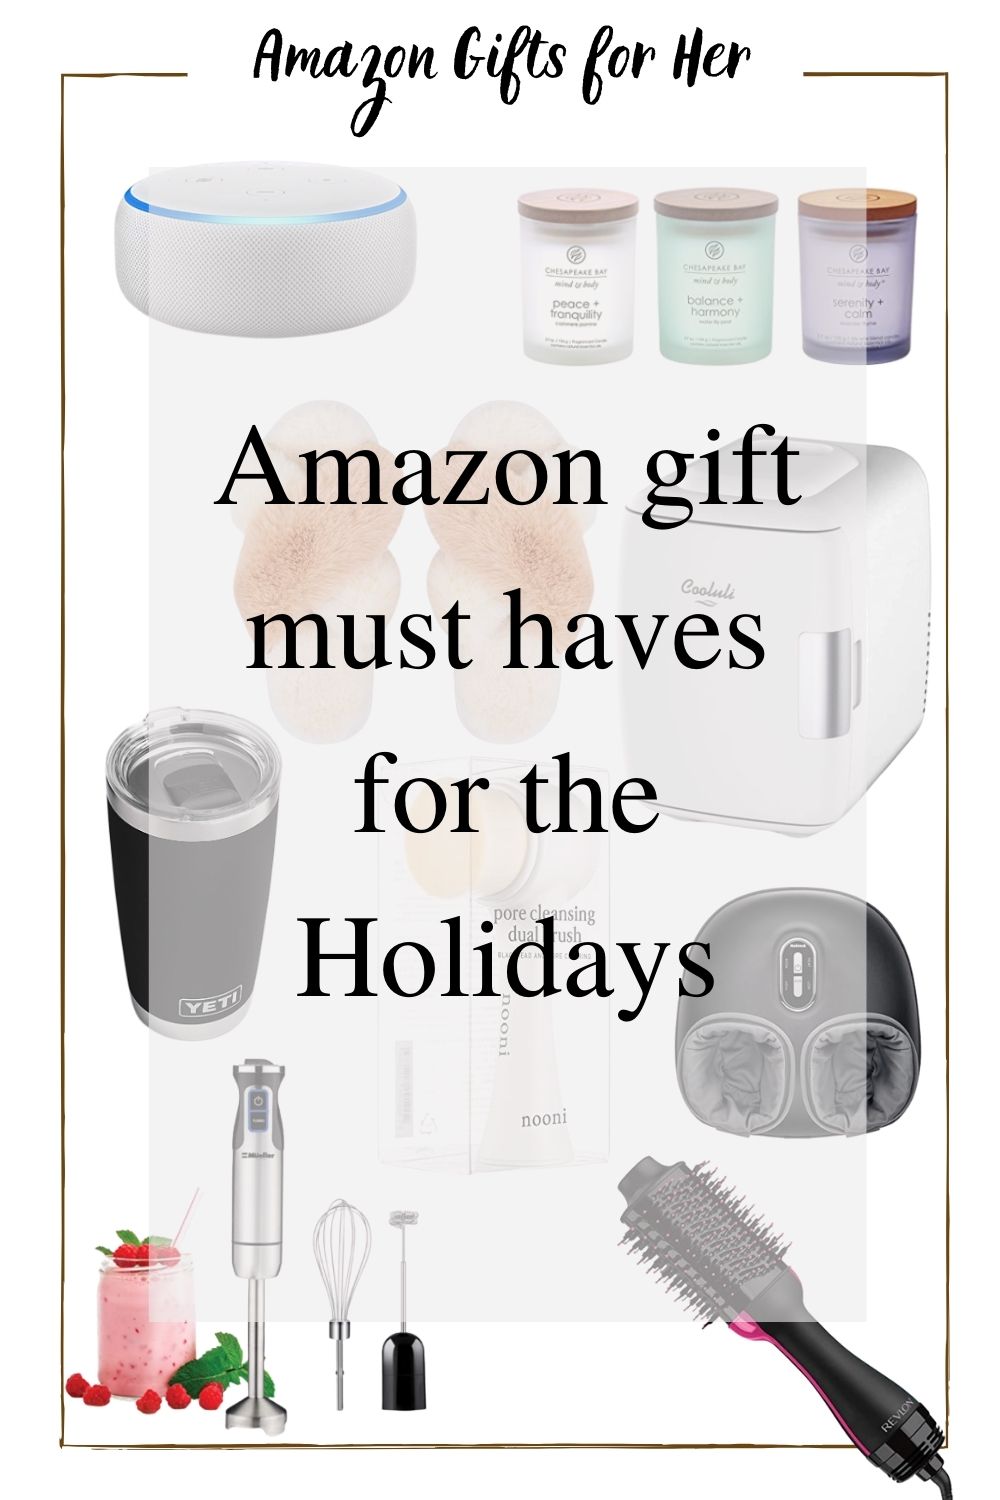 Amazon gifts